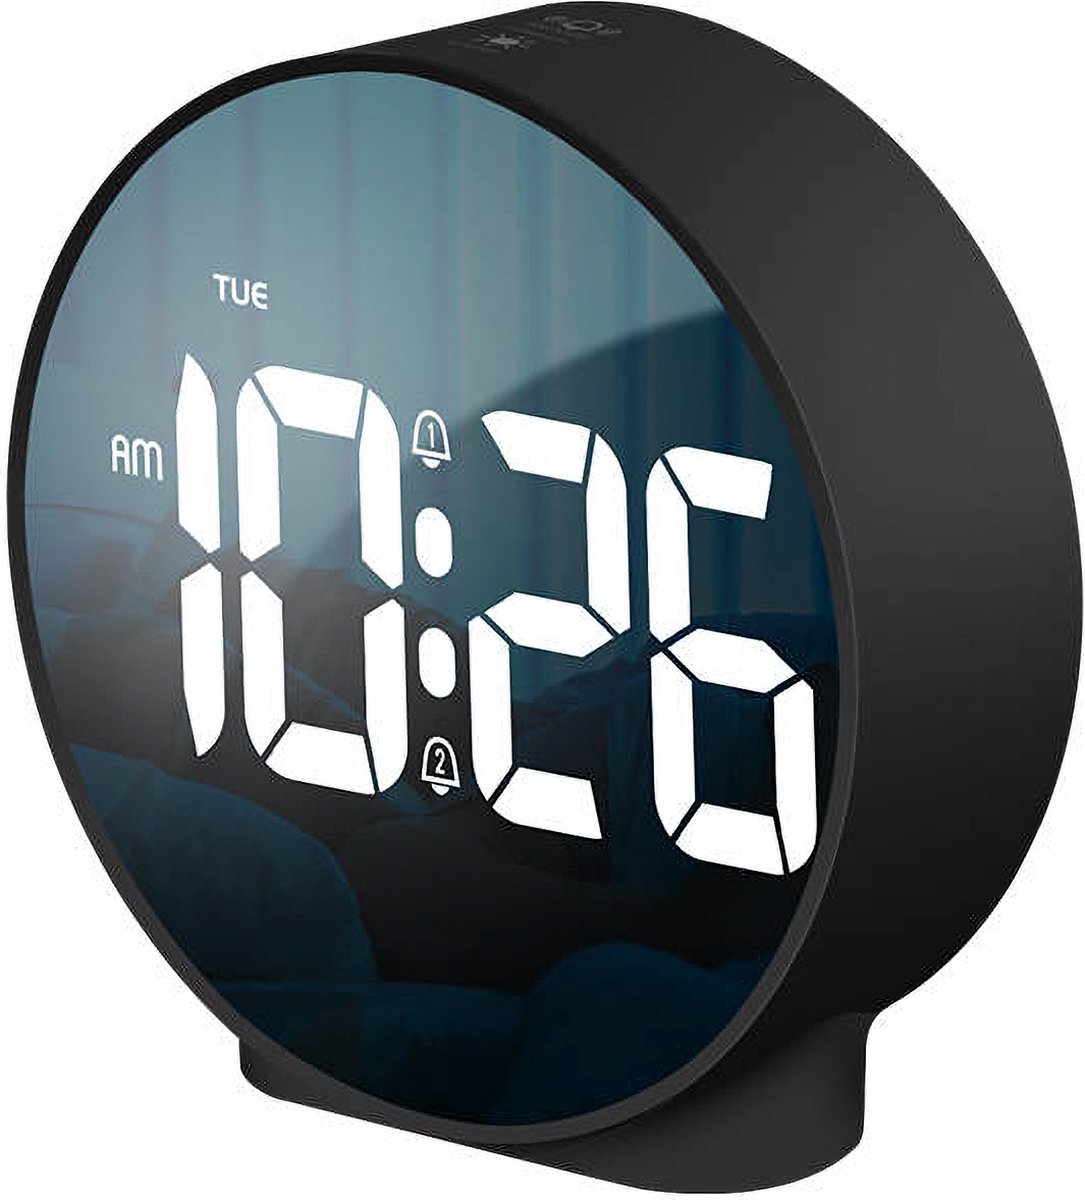 Universal - Numérique 999 jours minuterie minuterie horloge LCD